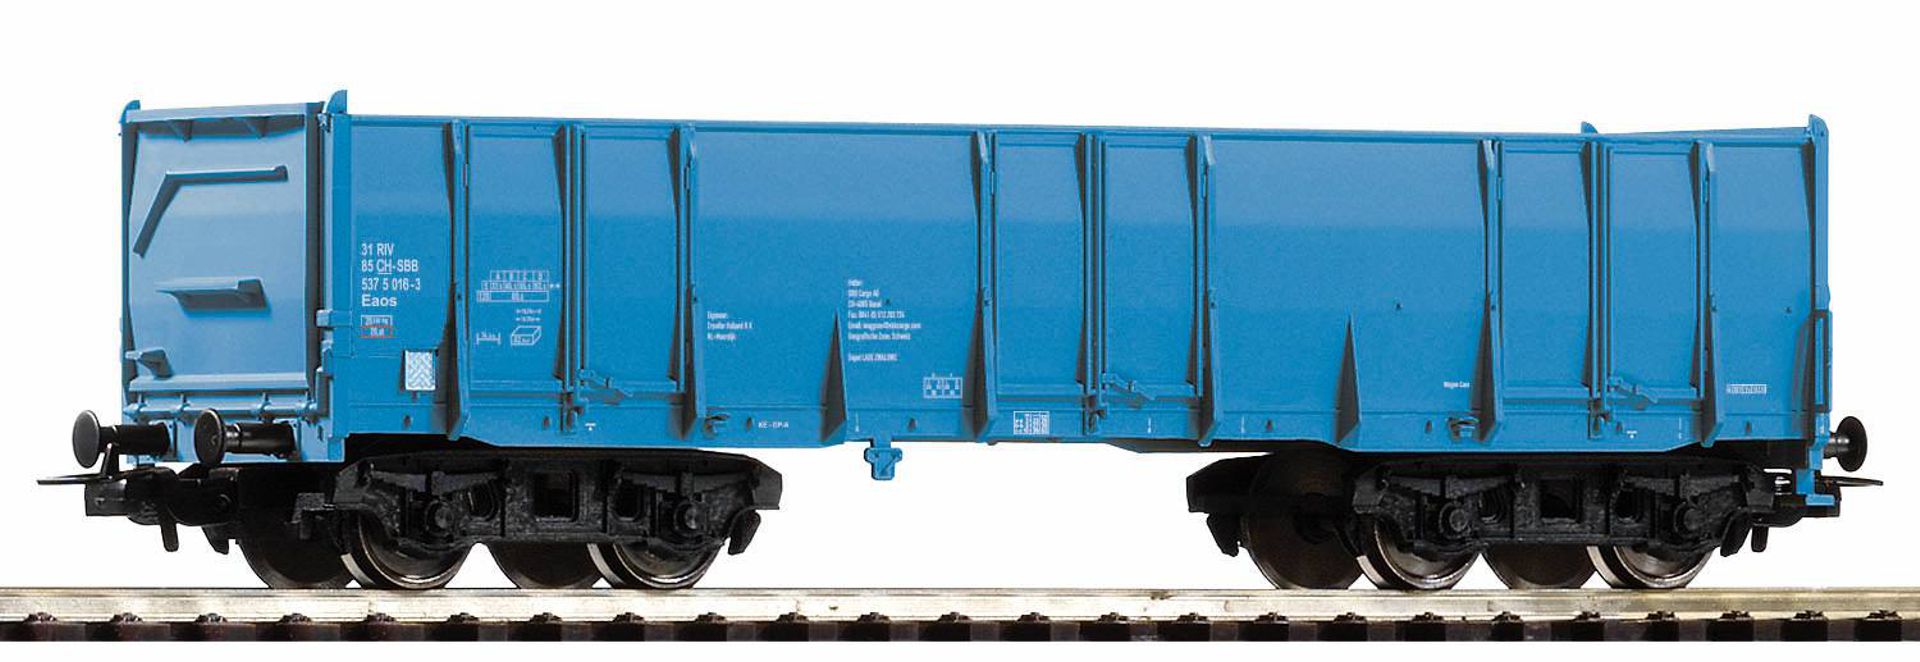 Piko 98546-B2 - Hochbordwagen Eaos, blau, SBB, Ep.VI, blau, Betriebsnummer 2